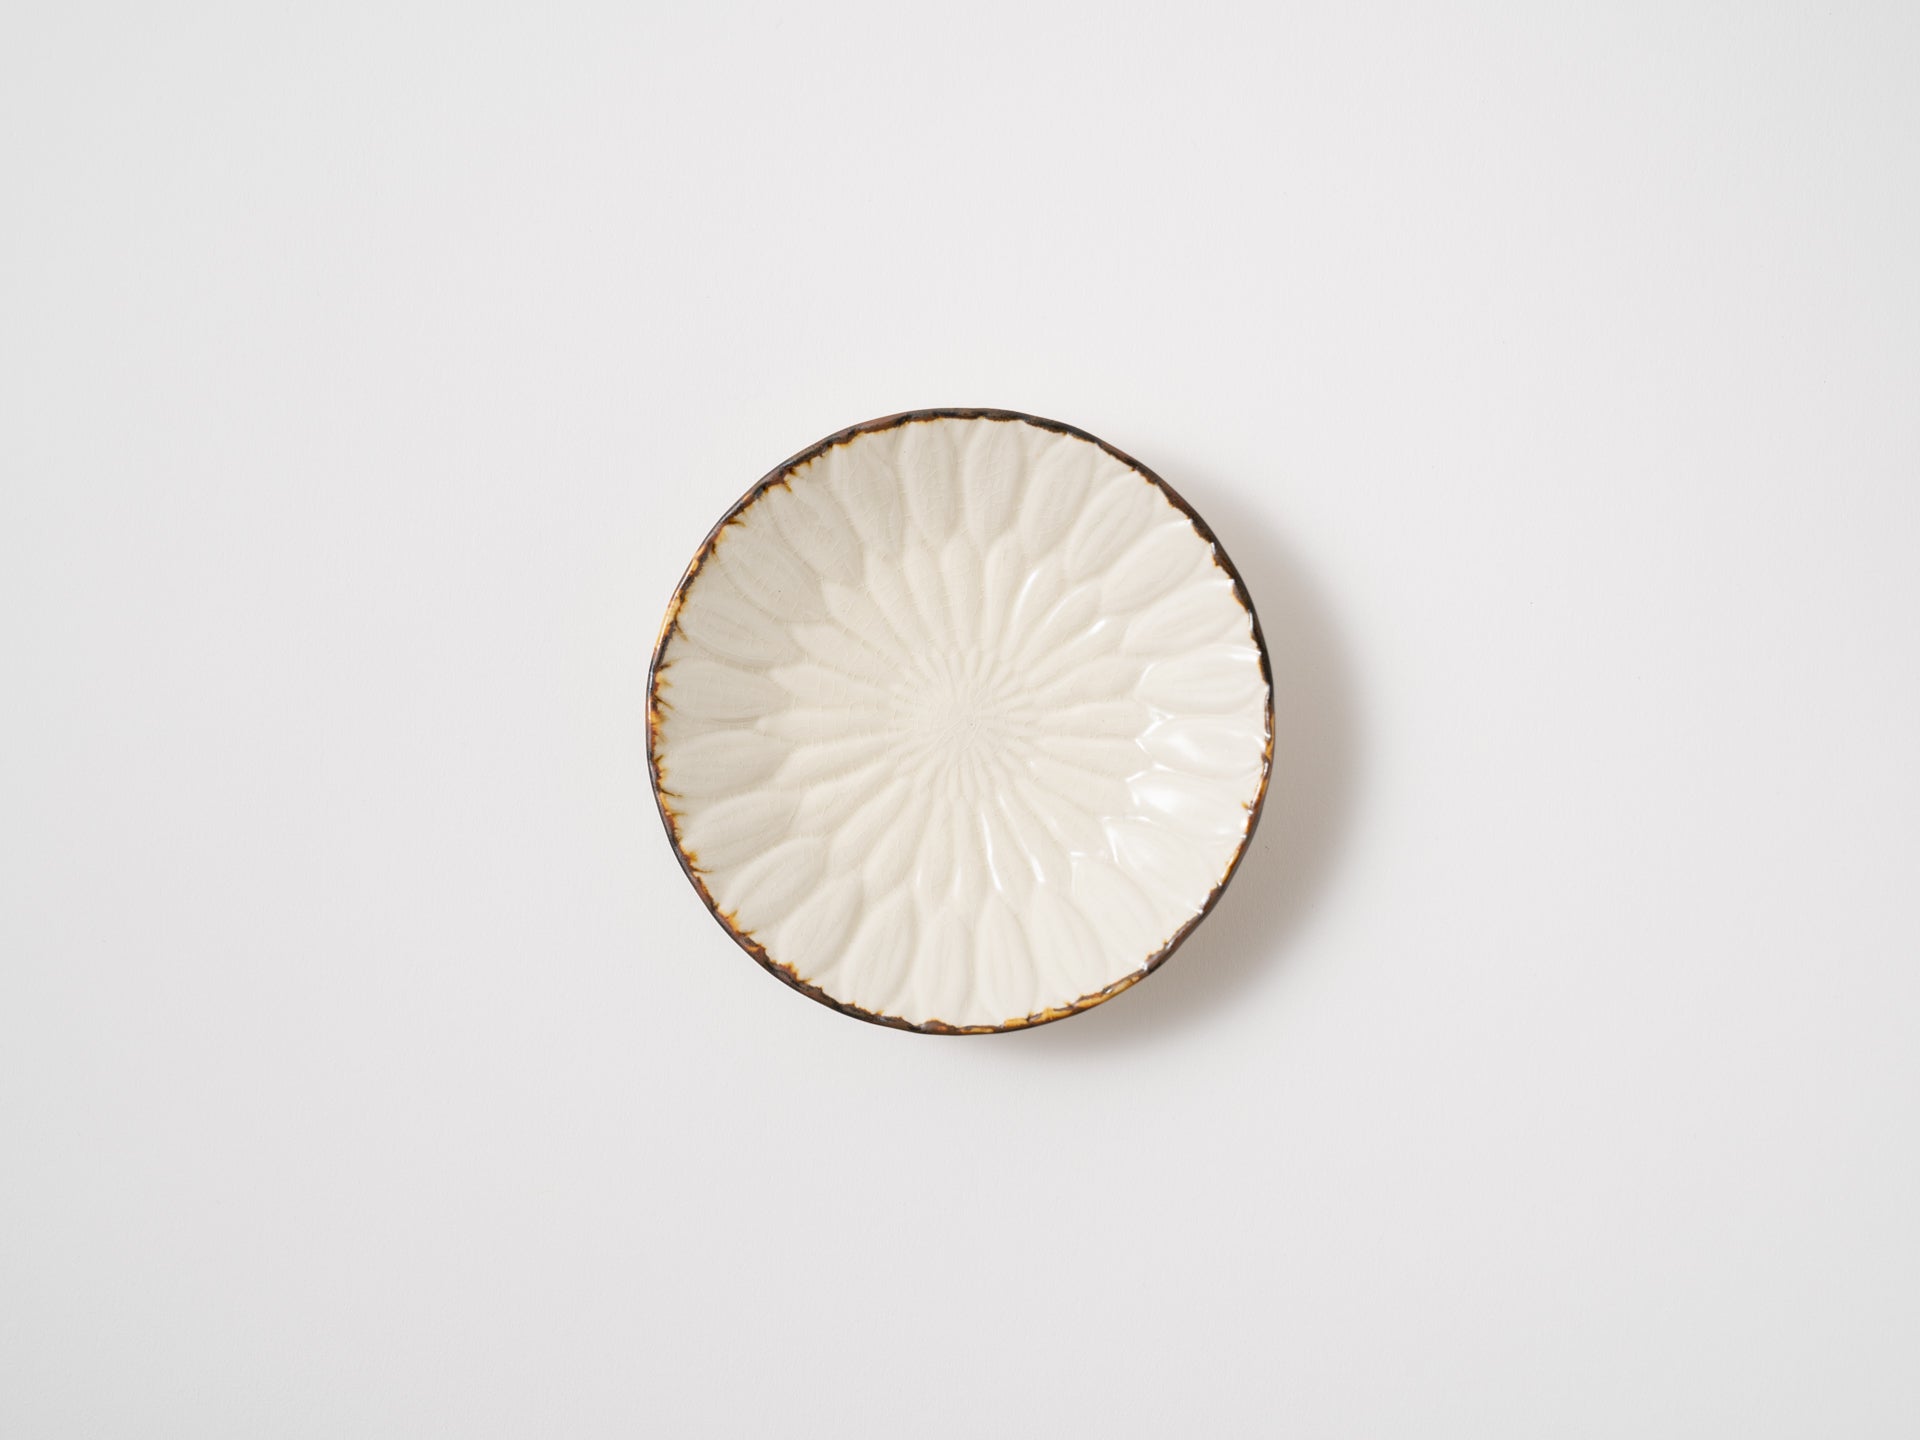 Chrysanthemum carving 3.5 inch plate [Aki Murata]